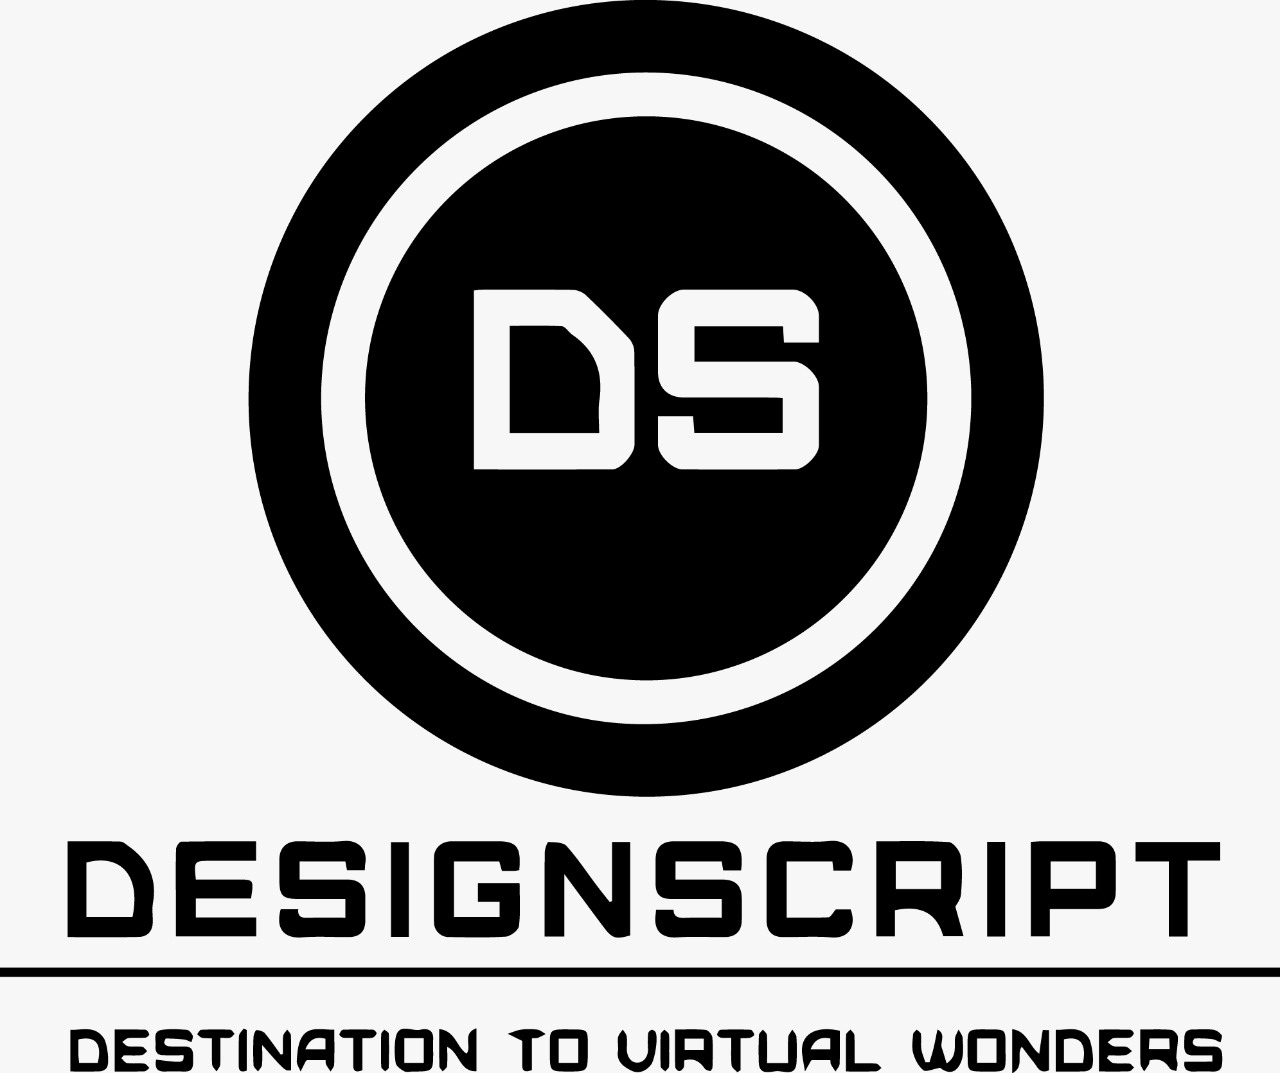 Design Script